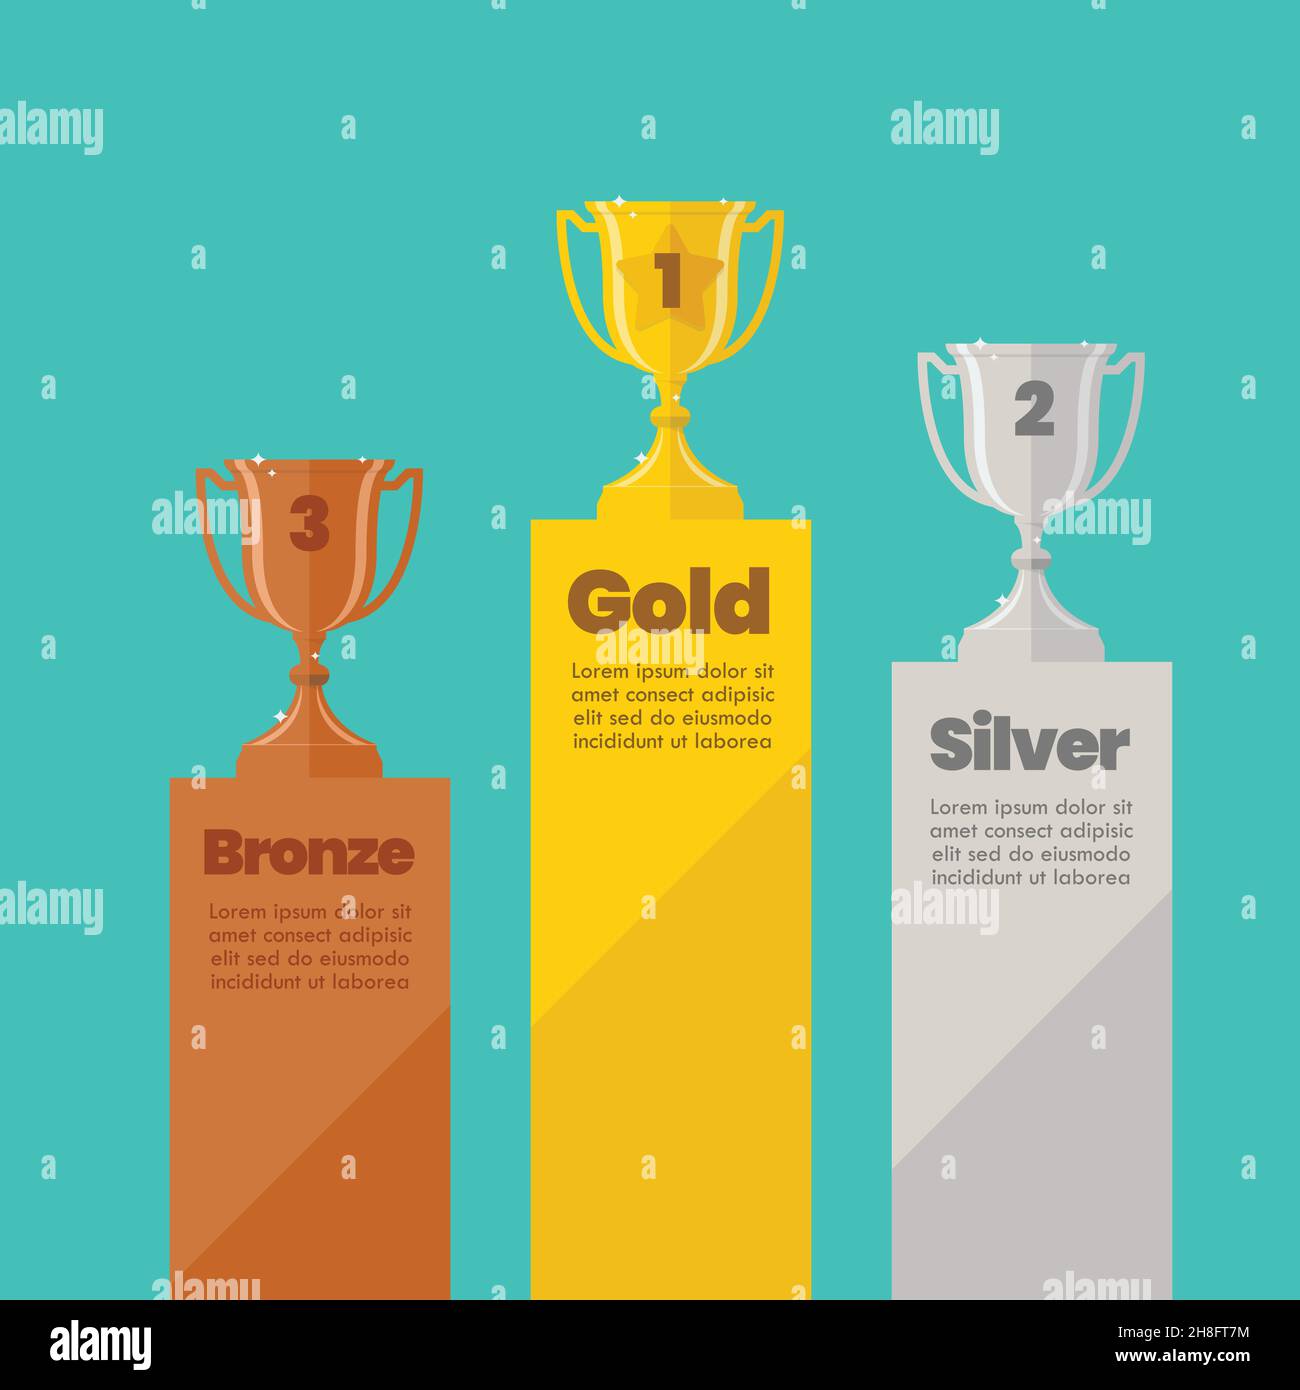 Infografica sulla classifica delle coppe dei campioni d'argento e bronzo con testo di esempio. Illustrazione vettoriale di stile piatto Illustrazione Vettoriale